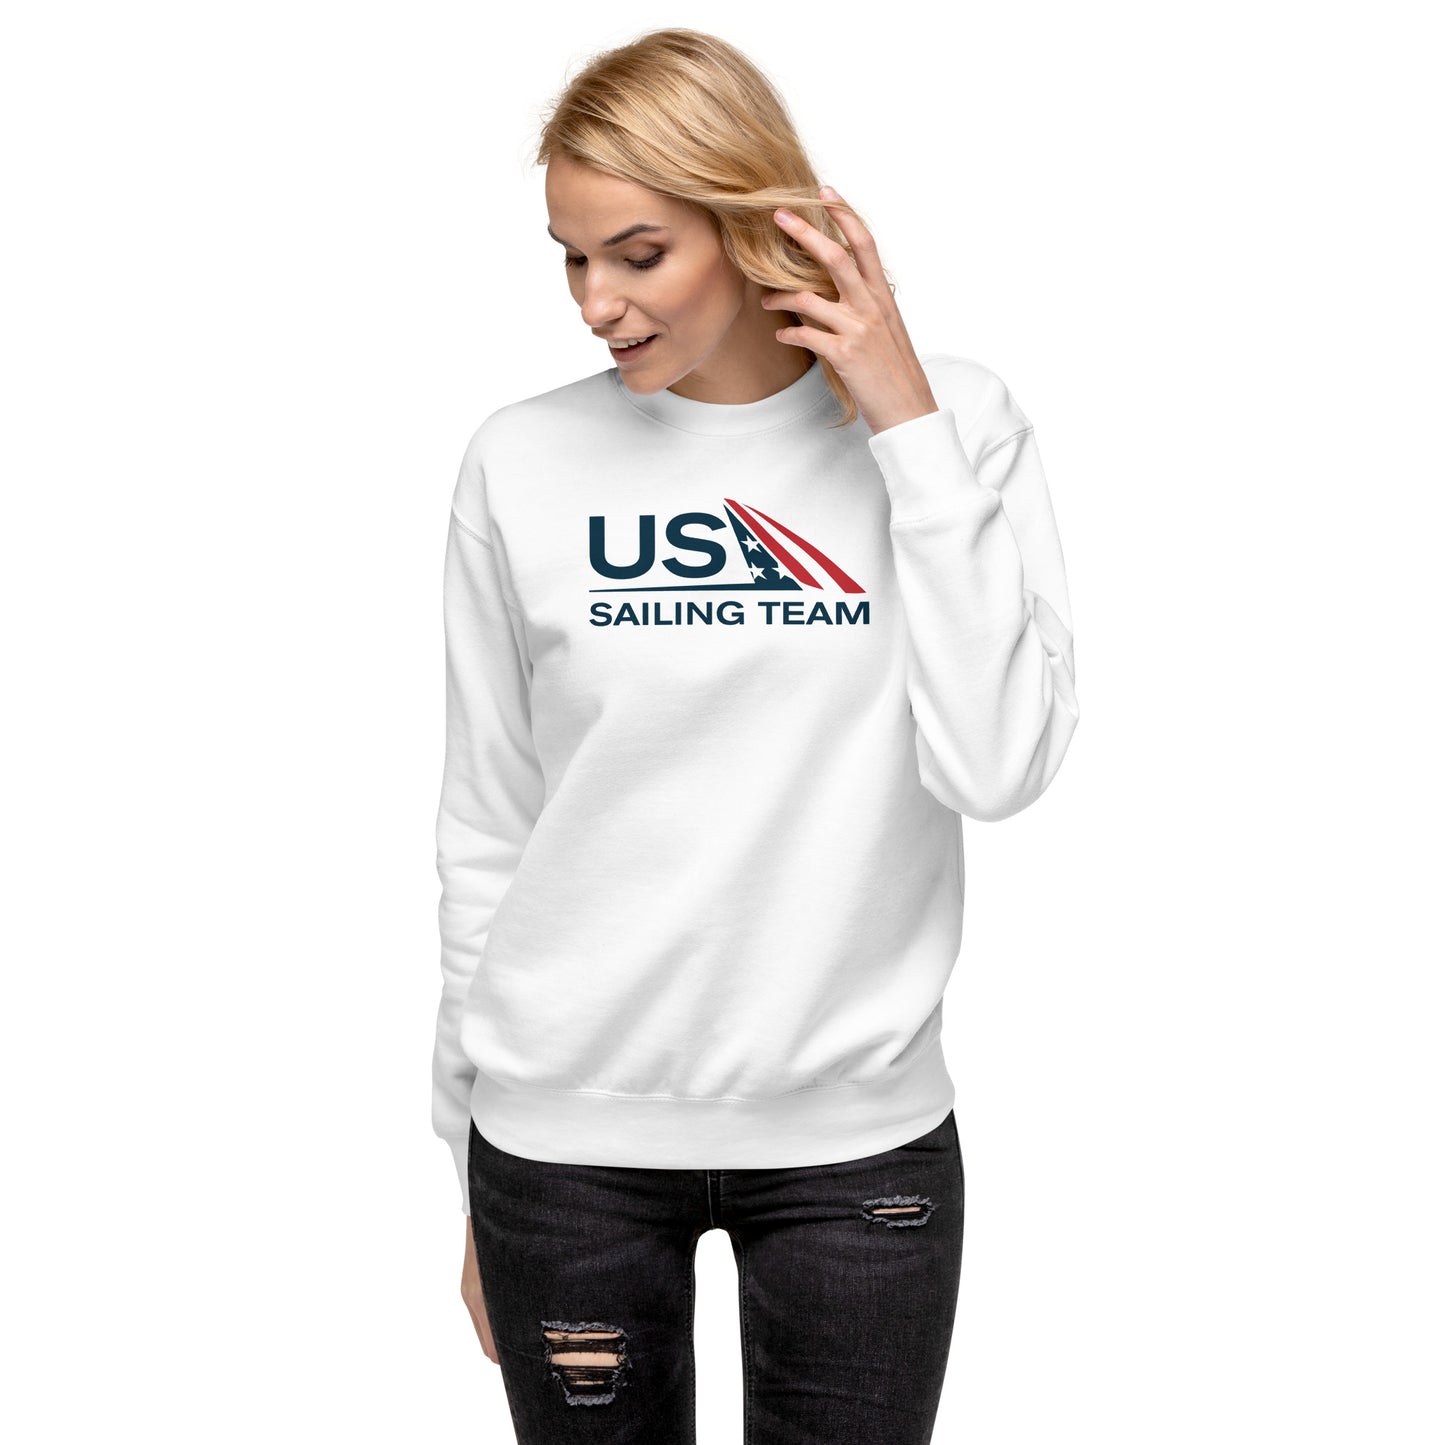 Unisex Premium Sweatshirt (US Sailing Team)